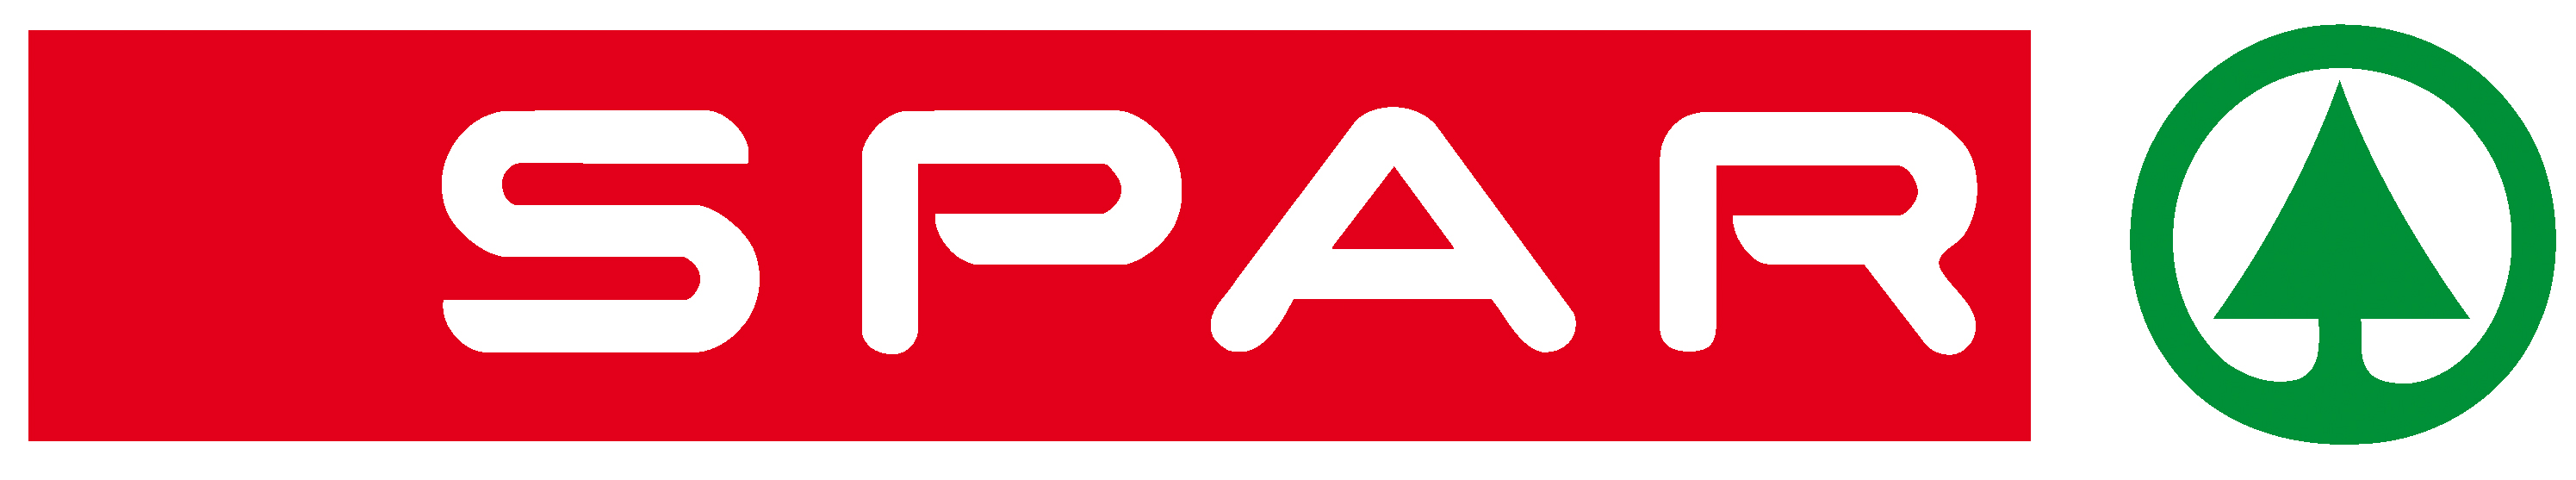 Spar Tops Logo photo - 1